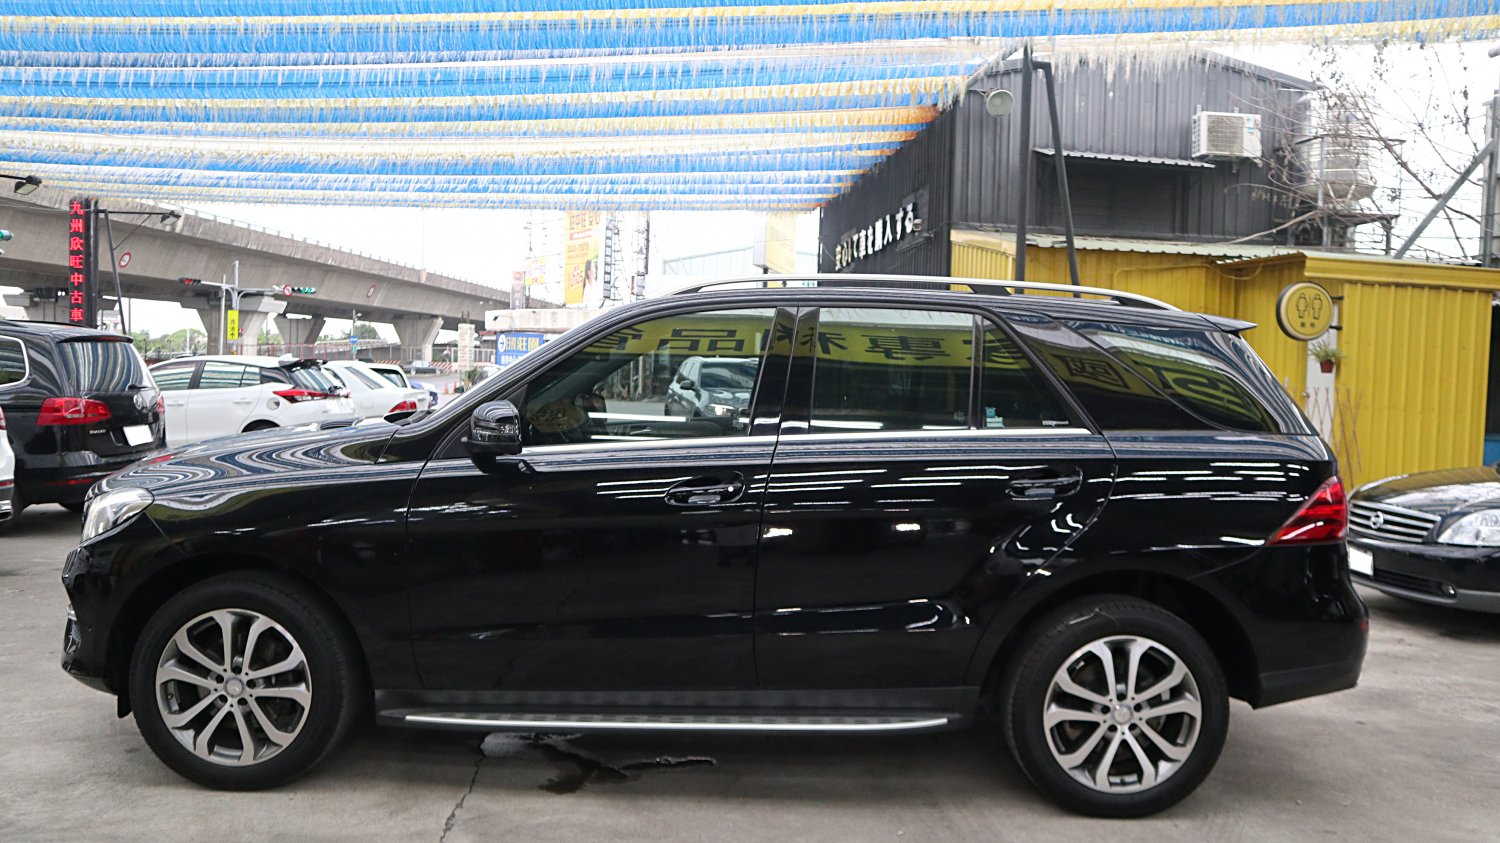 Benz 賓士 ／ GLE-Class ／ 2016年 ／ 2016年Benz GLE350d 黑色 賓士中古車 ／ 成交區